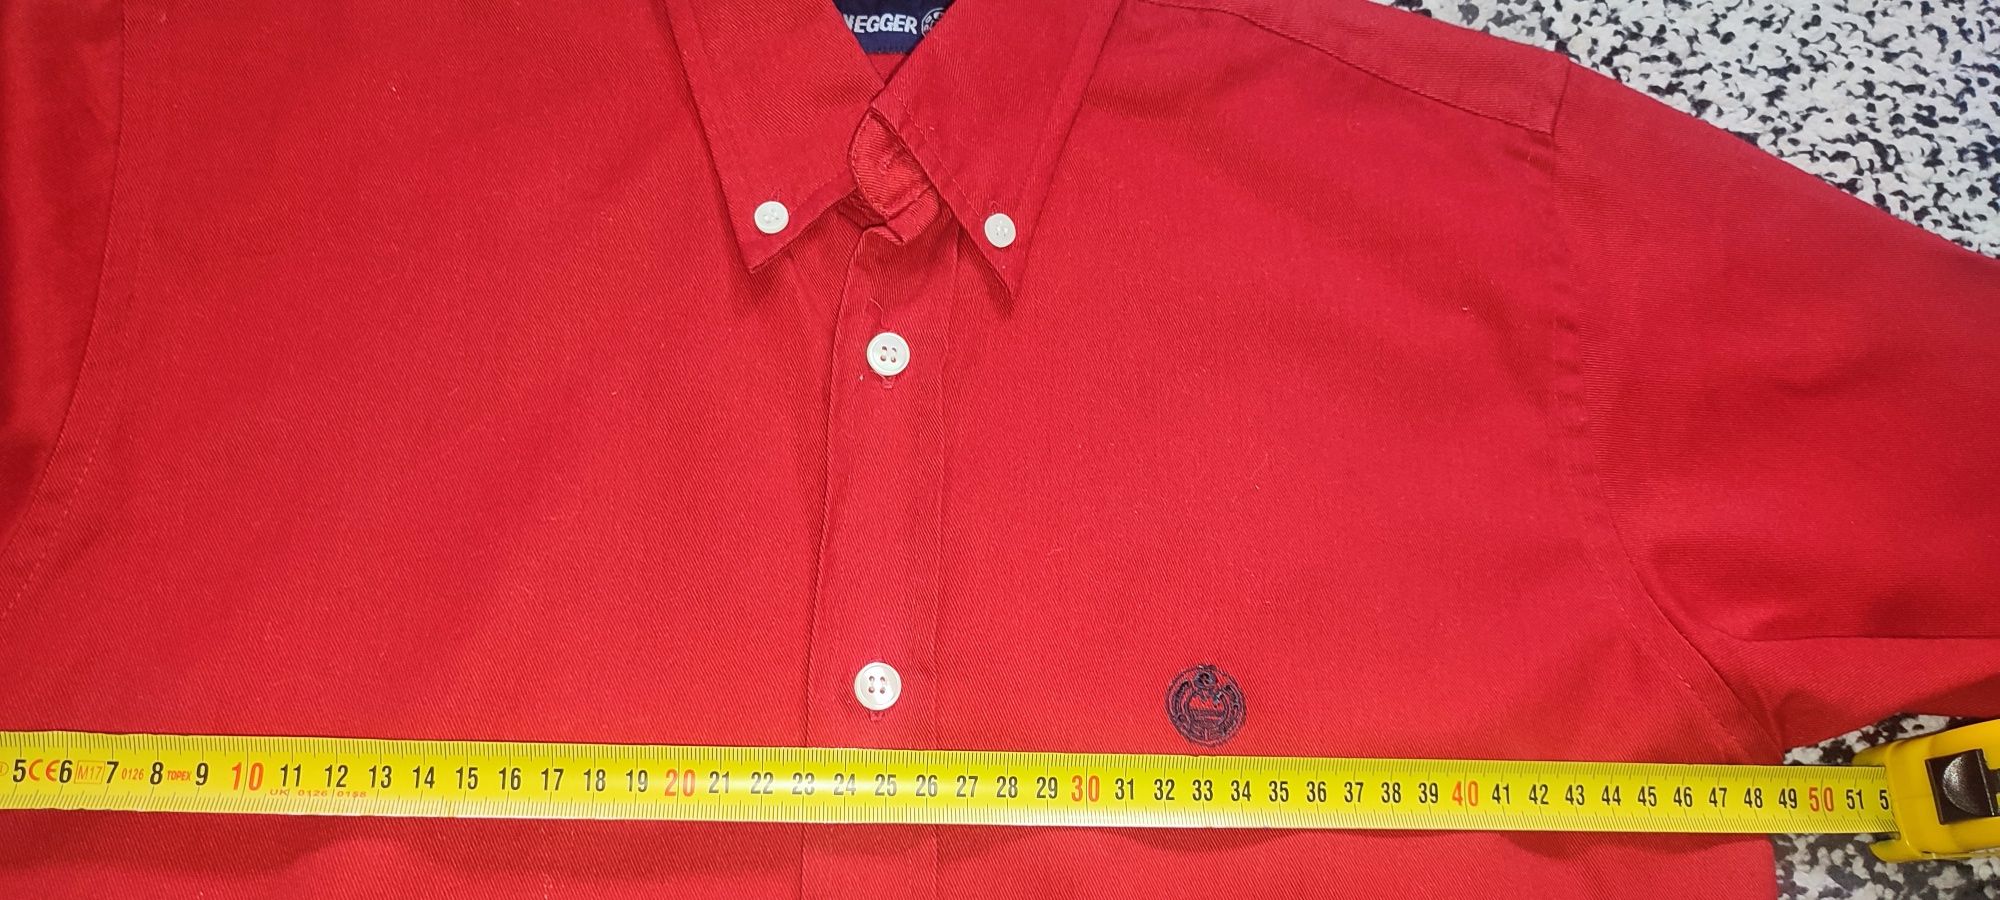 Śliczna czerwona koszula rozm 140-146 wymiary na fotkach